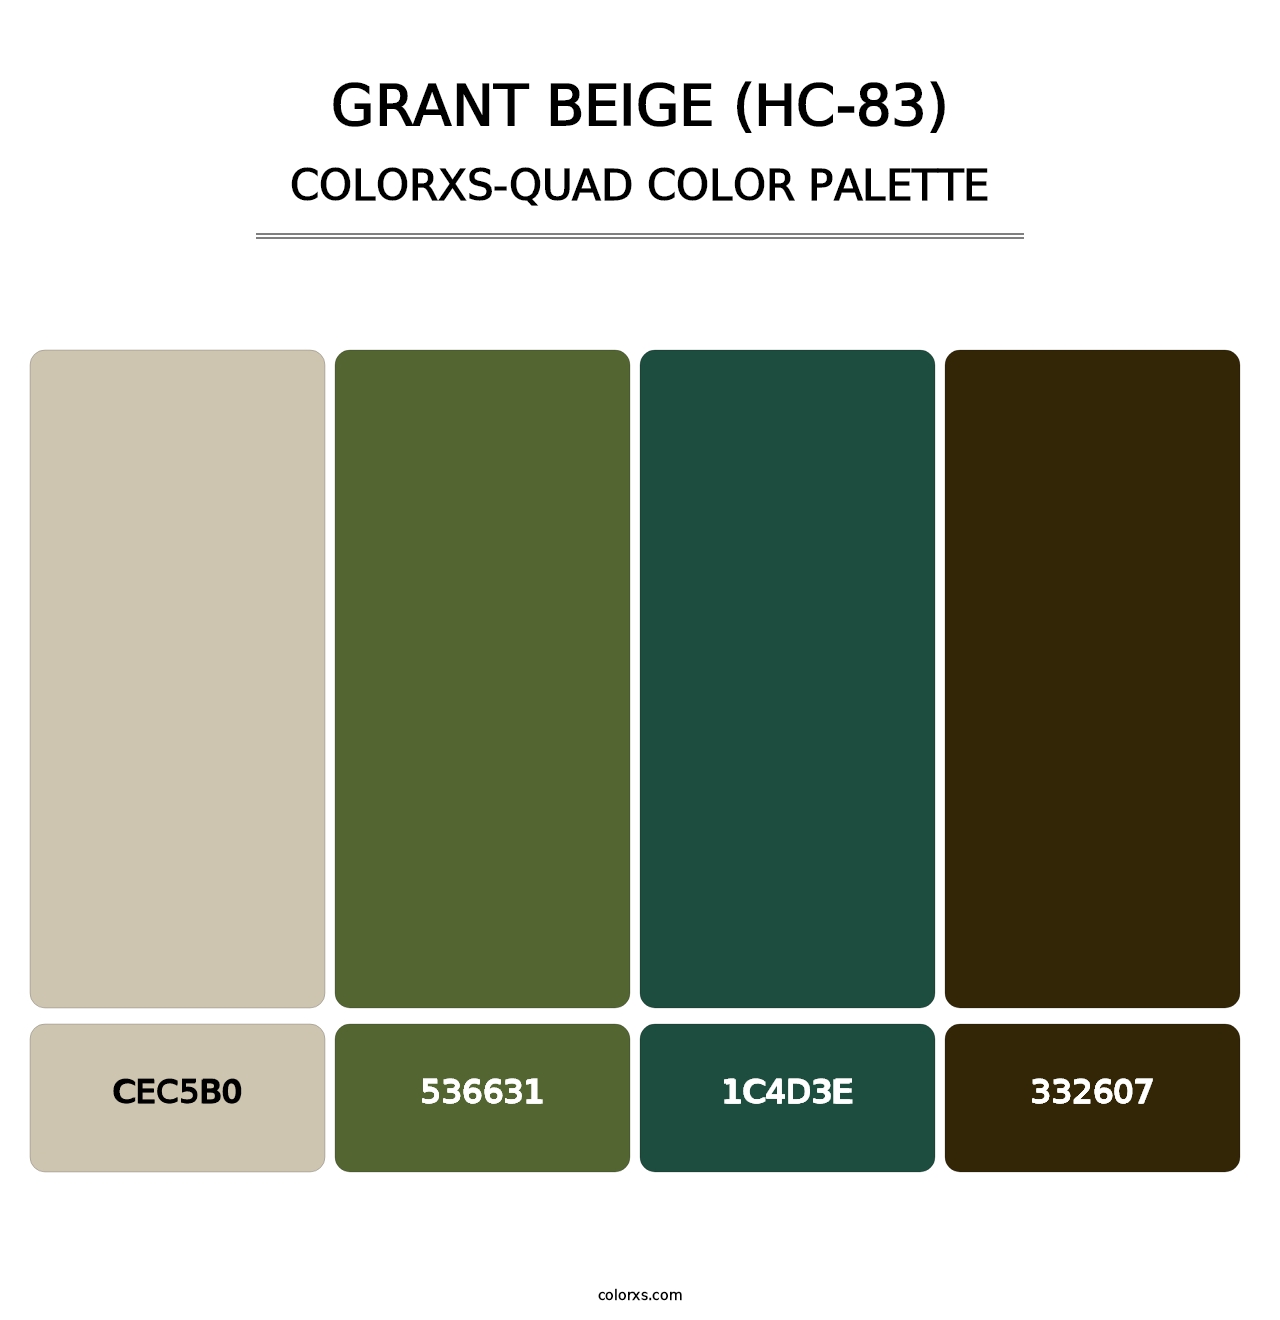 Grant Beige (HC-83) - Colorxs Quad Palette